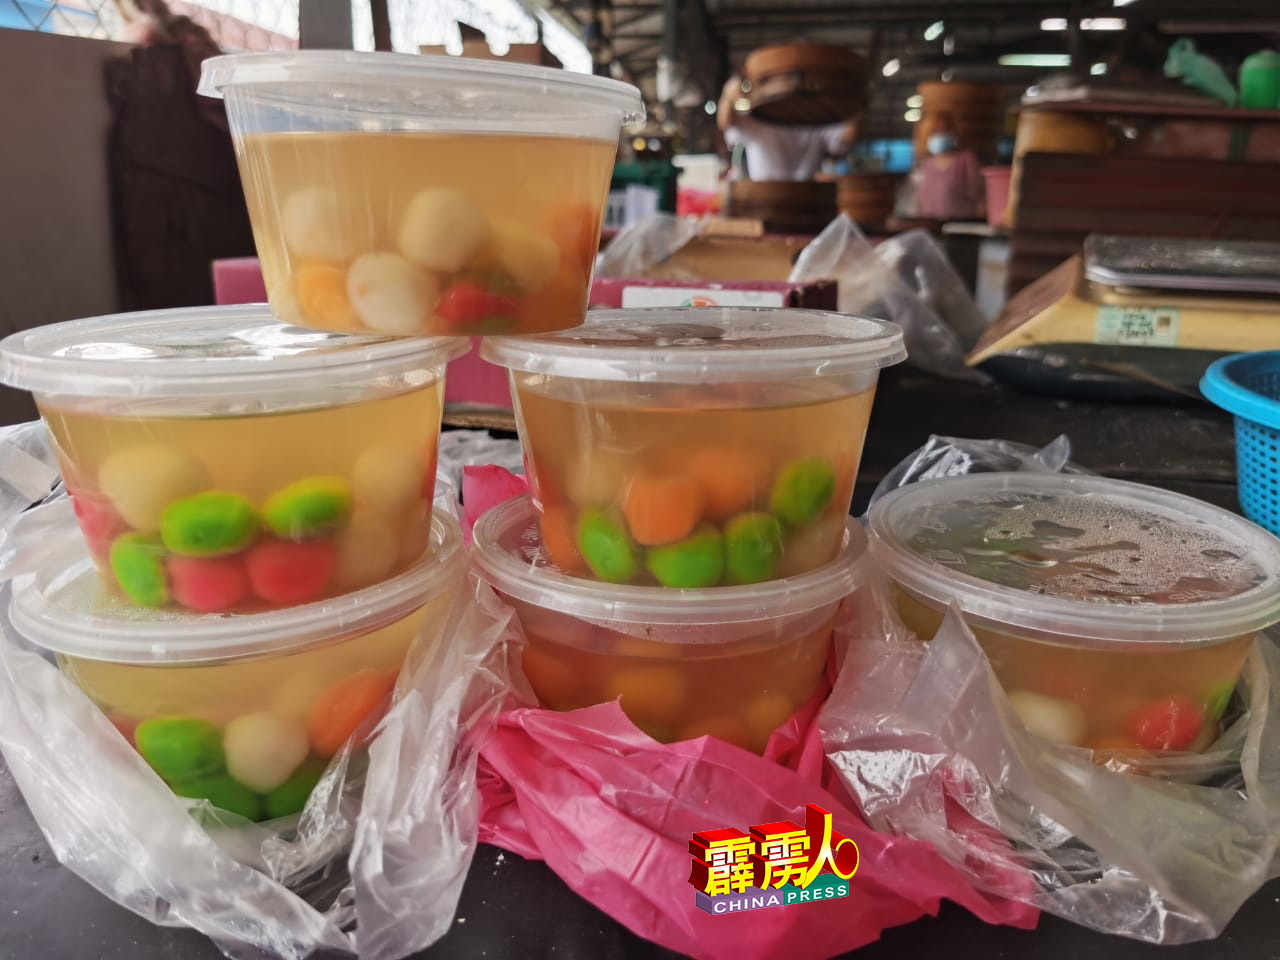 由于糯米价格上涨，部分小贩售卖的盒装汤圆每盒为5令吉，比去年涨了50仙。